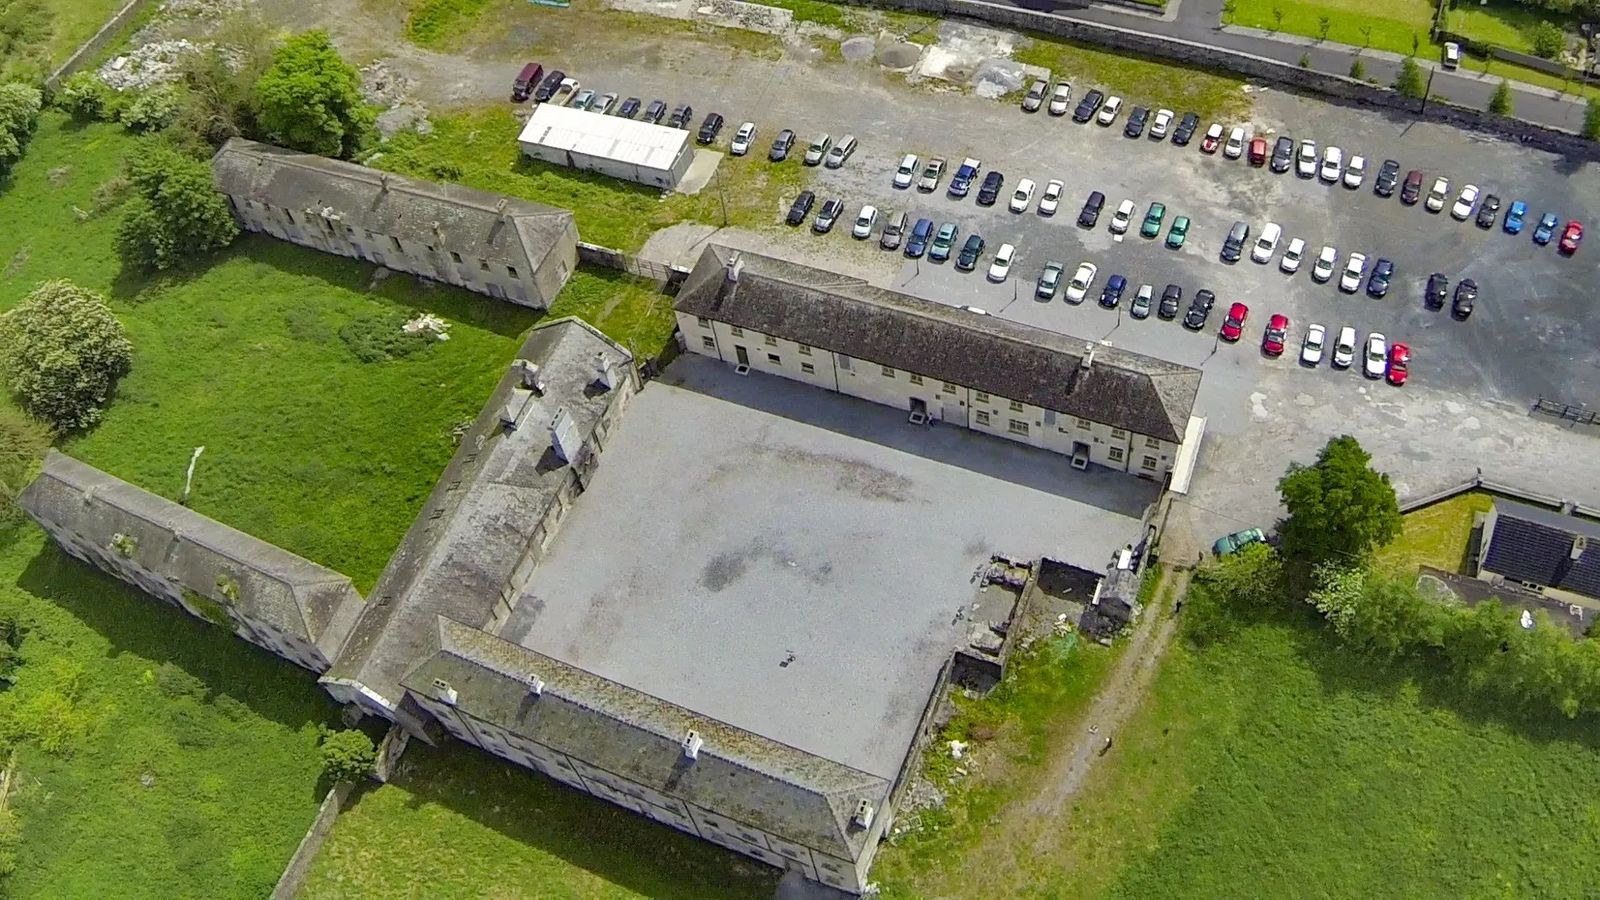 Irish Workhouses